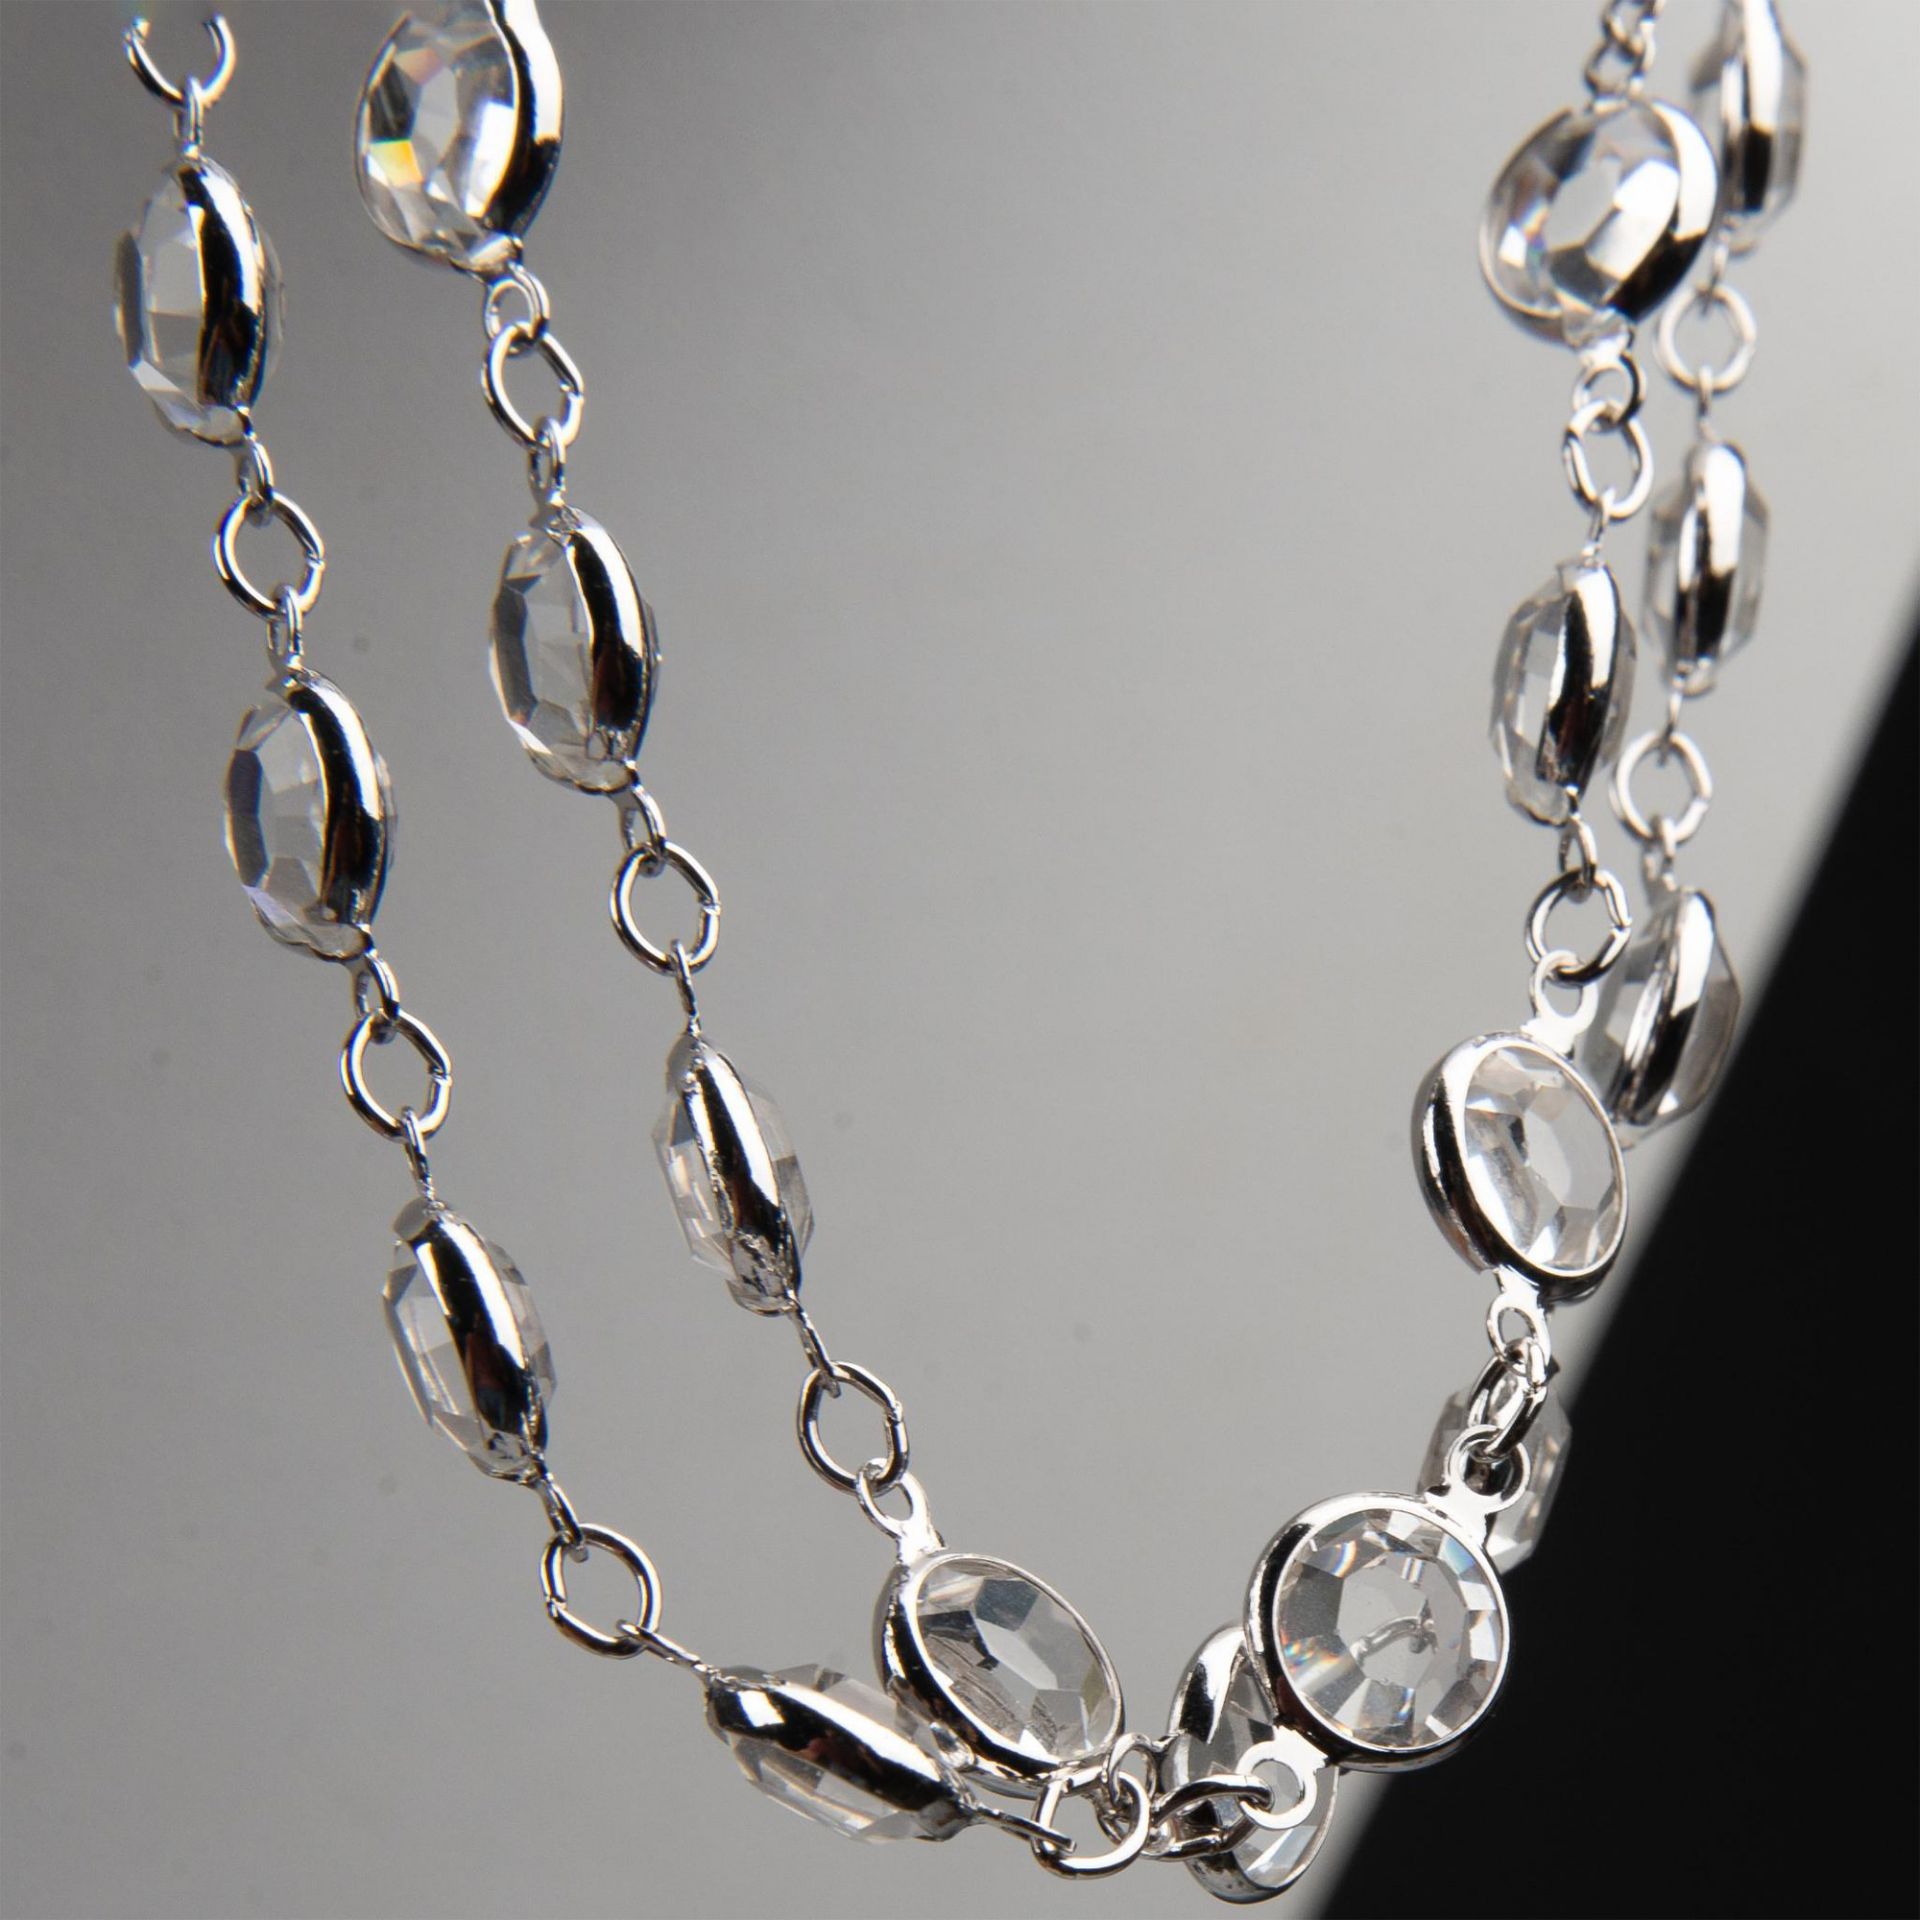 2pc Swarovski Crystal Necklace & Bracelet Set - Image 4 of 7